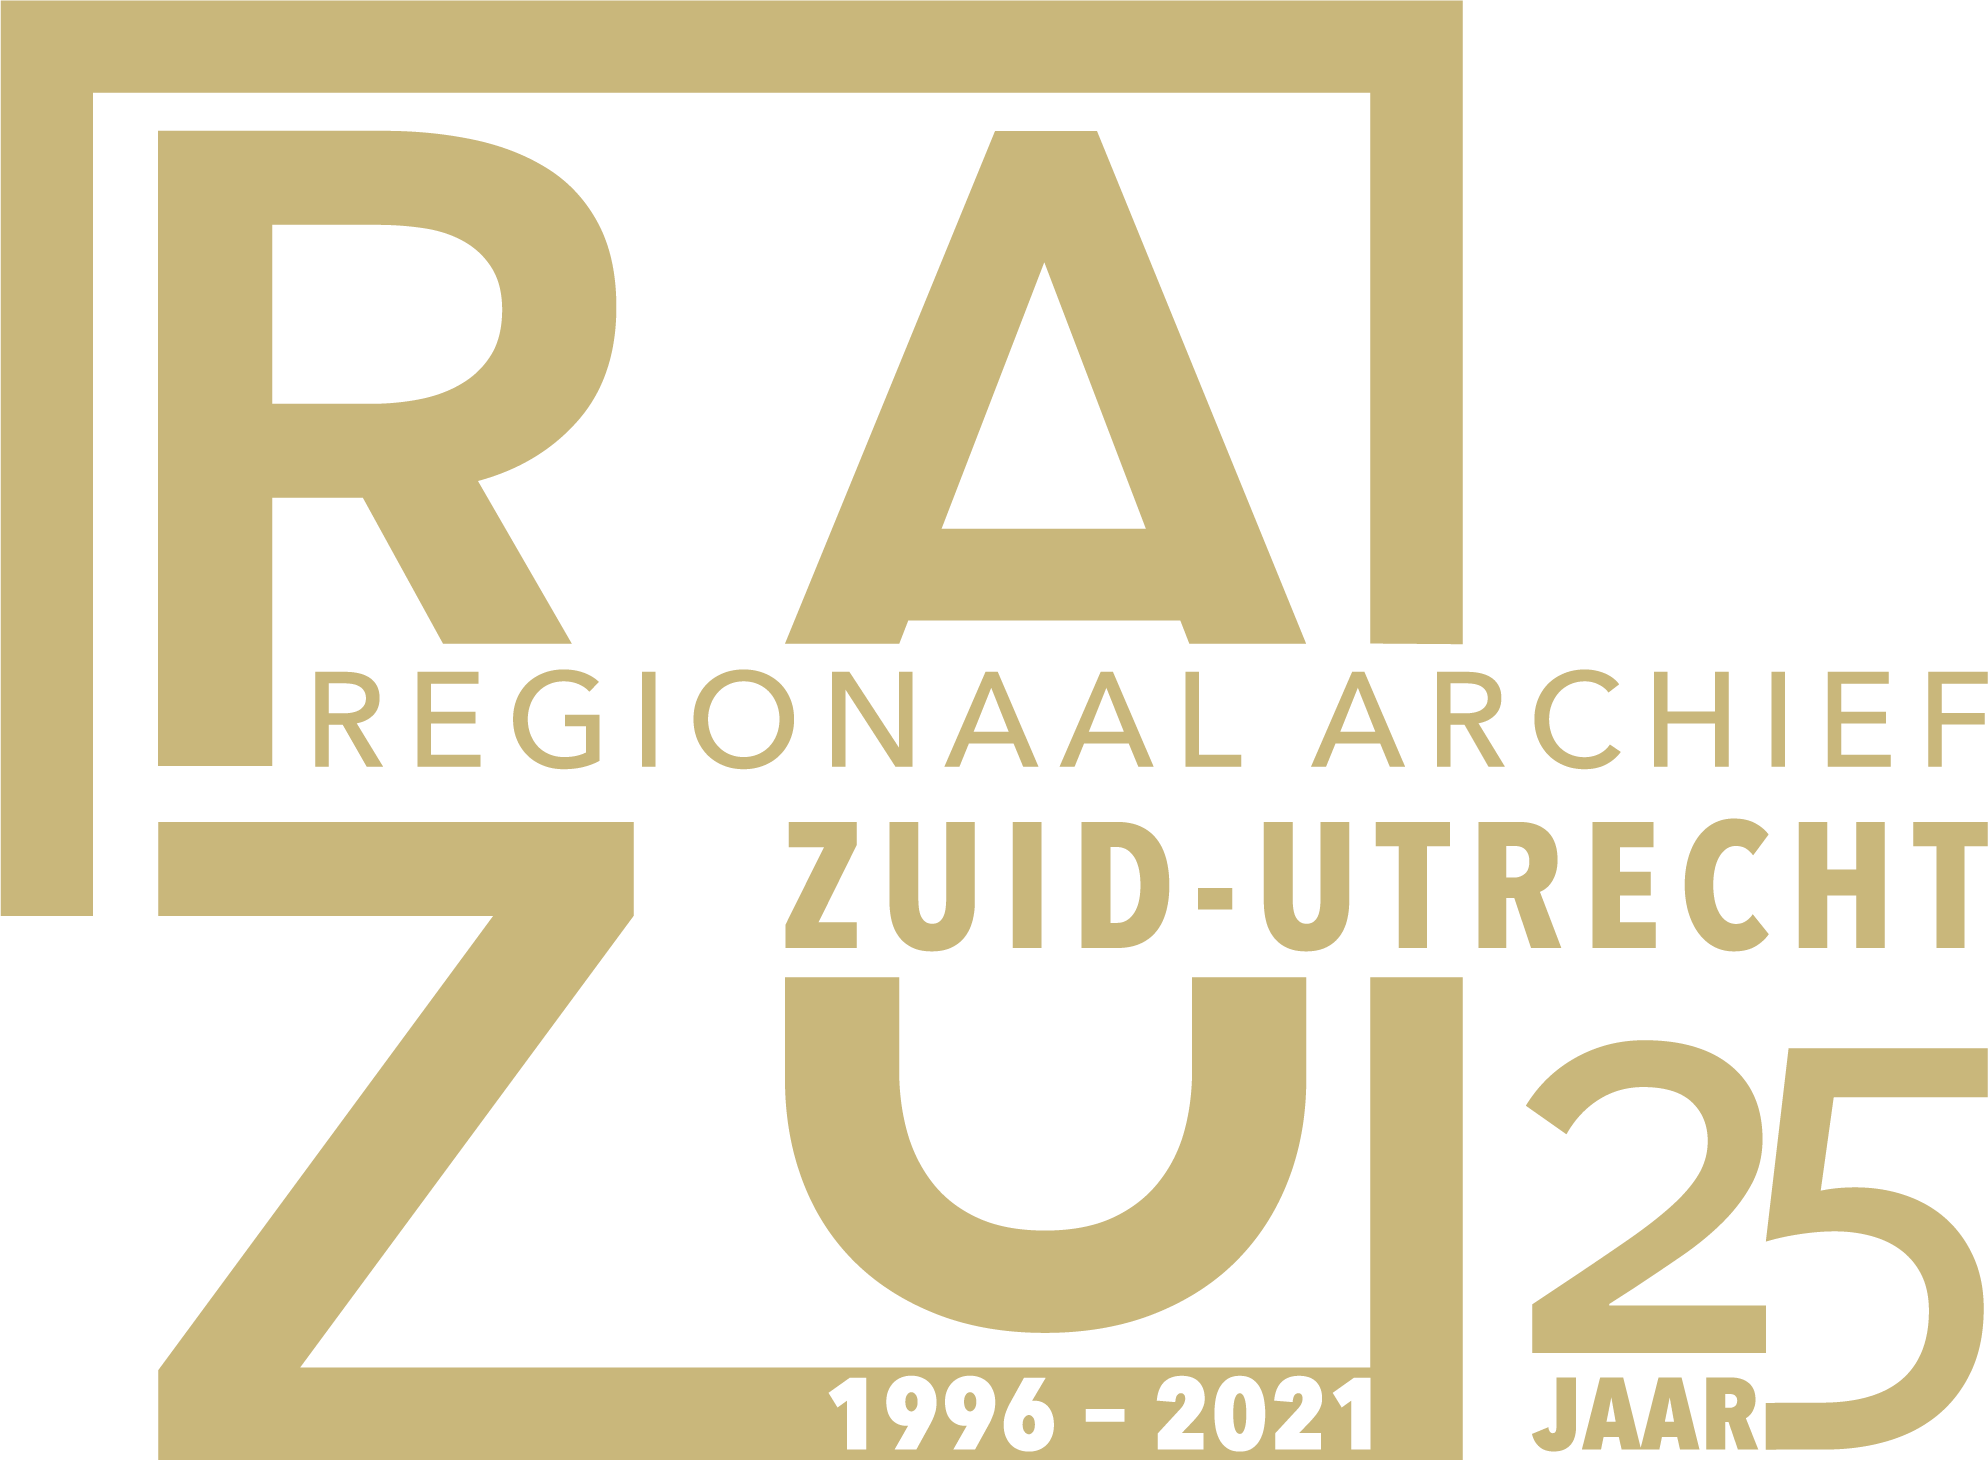 Het logo van het Regionaal Archief Zuid-Utrecht in zandgele kleur met een vermelding naar het jubileum in de vorm van de tekst "25 jaar 1996 - 2021"